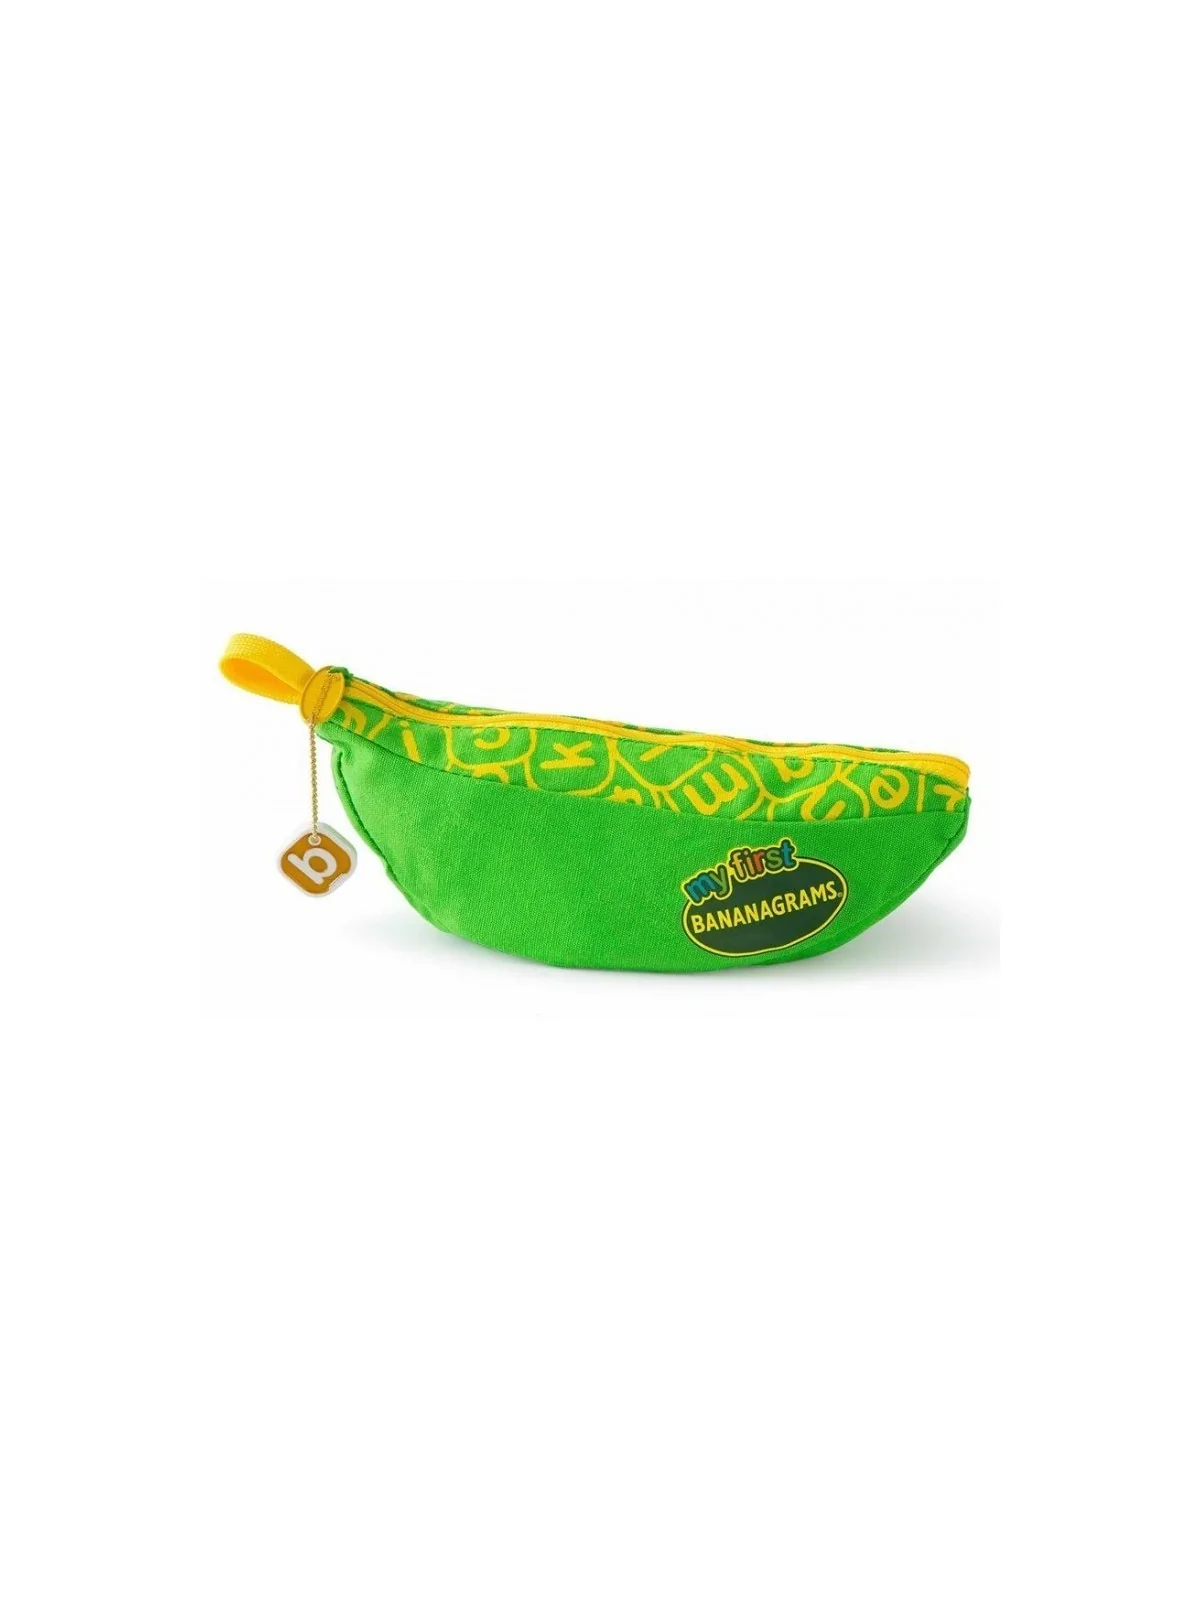 Comprar Mi Primer Bananagrams barato al mejor precio 17,99 € de Banana